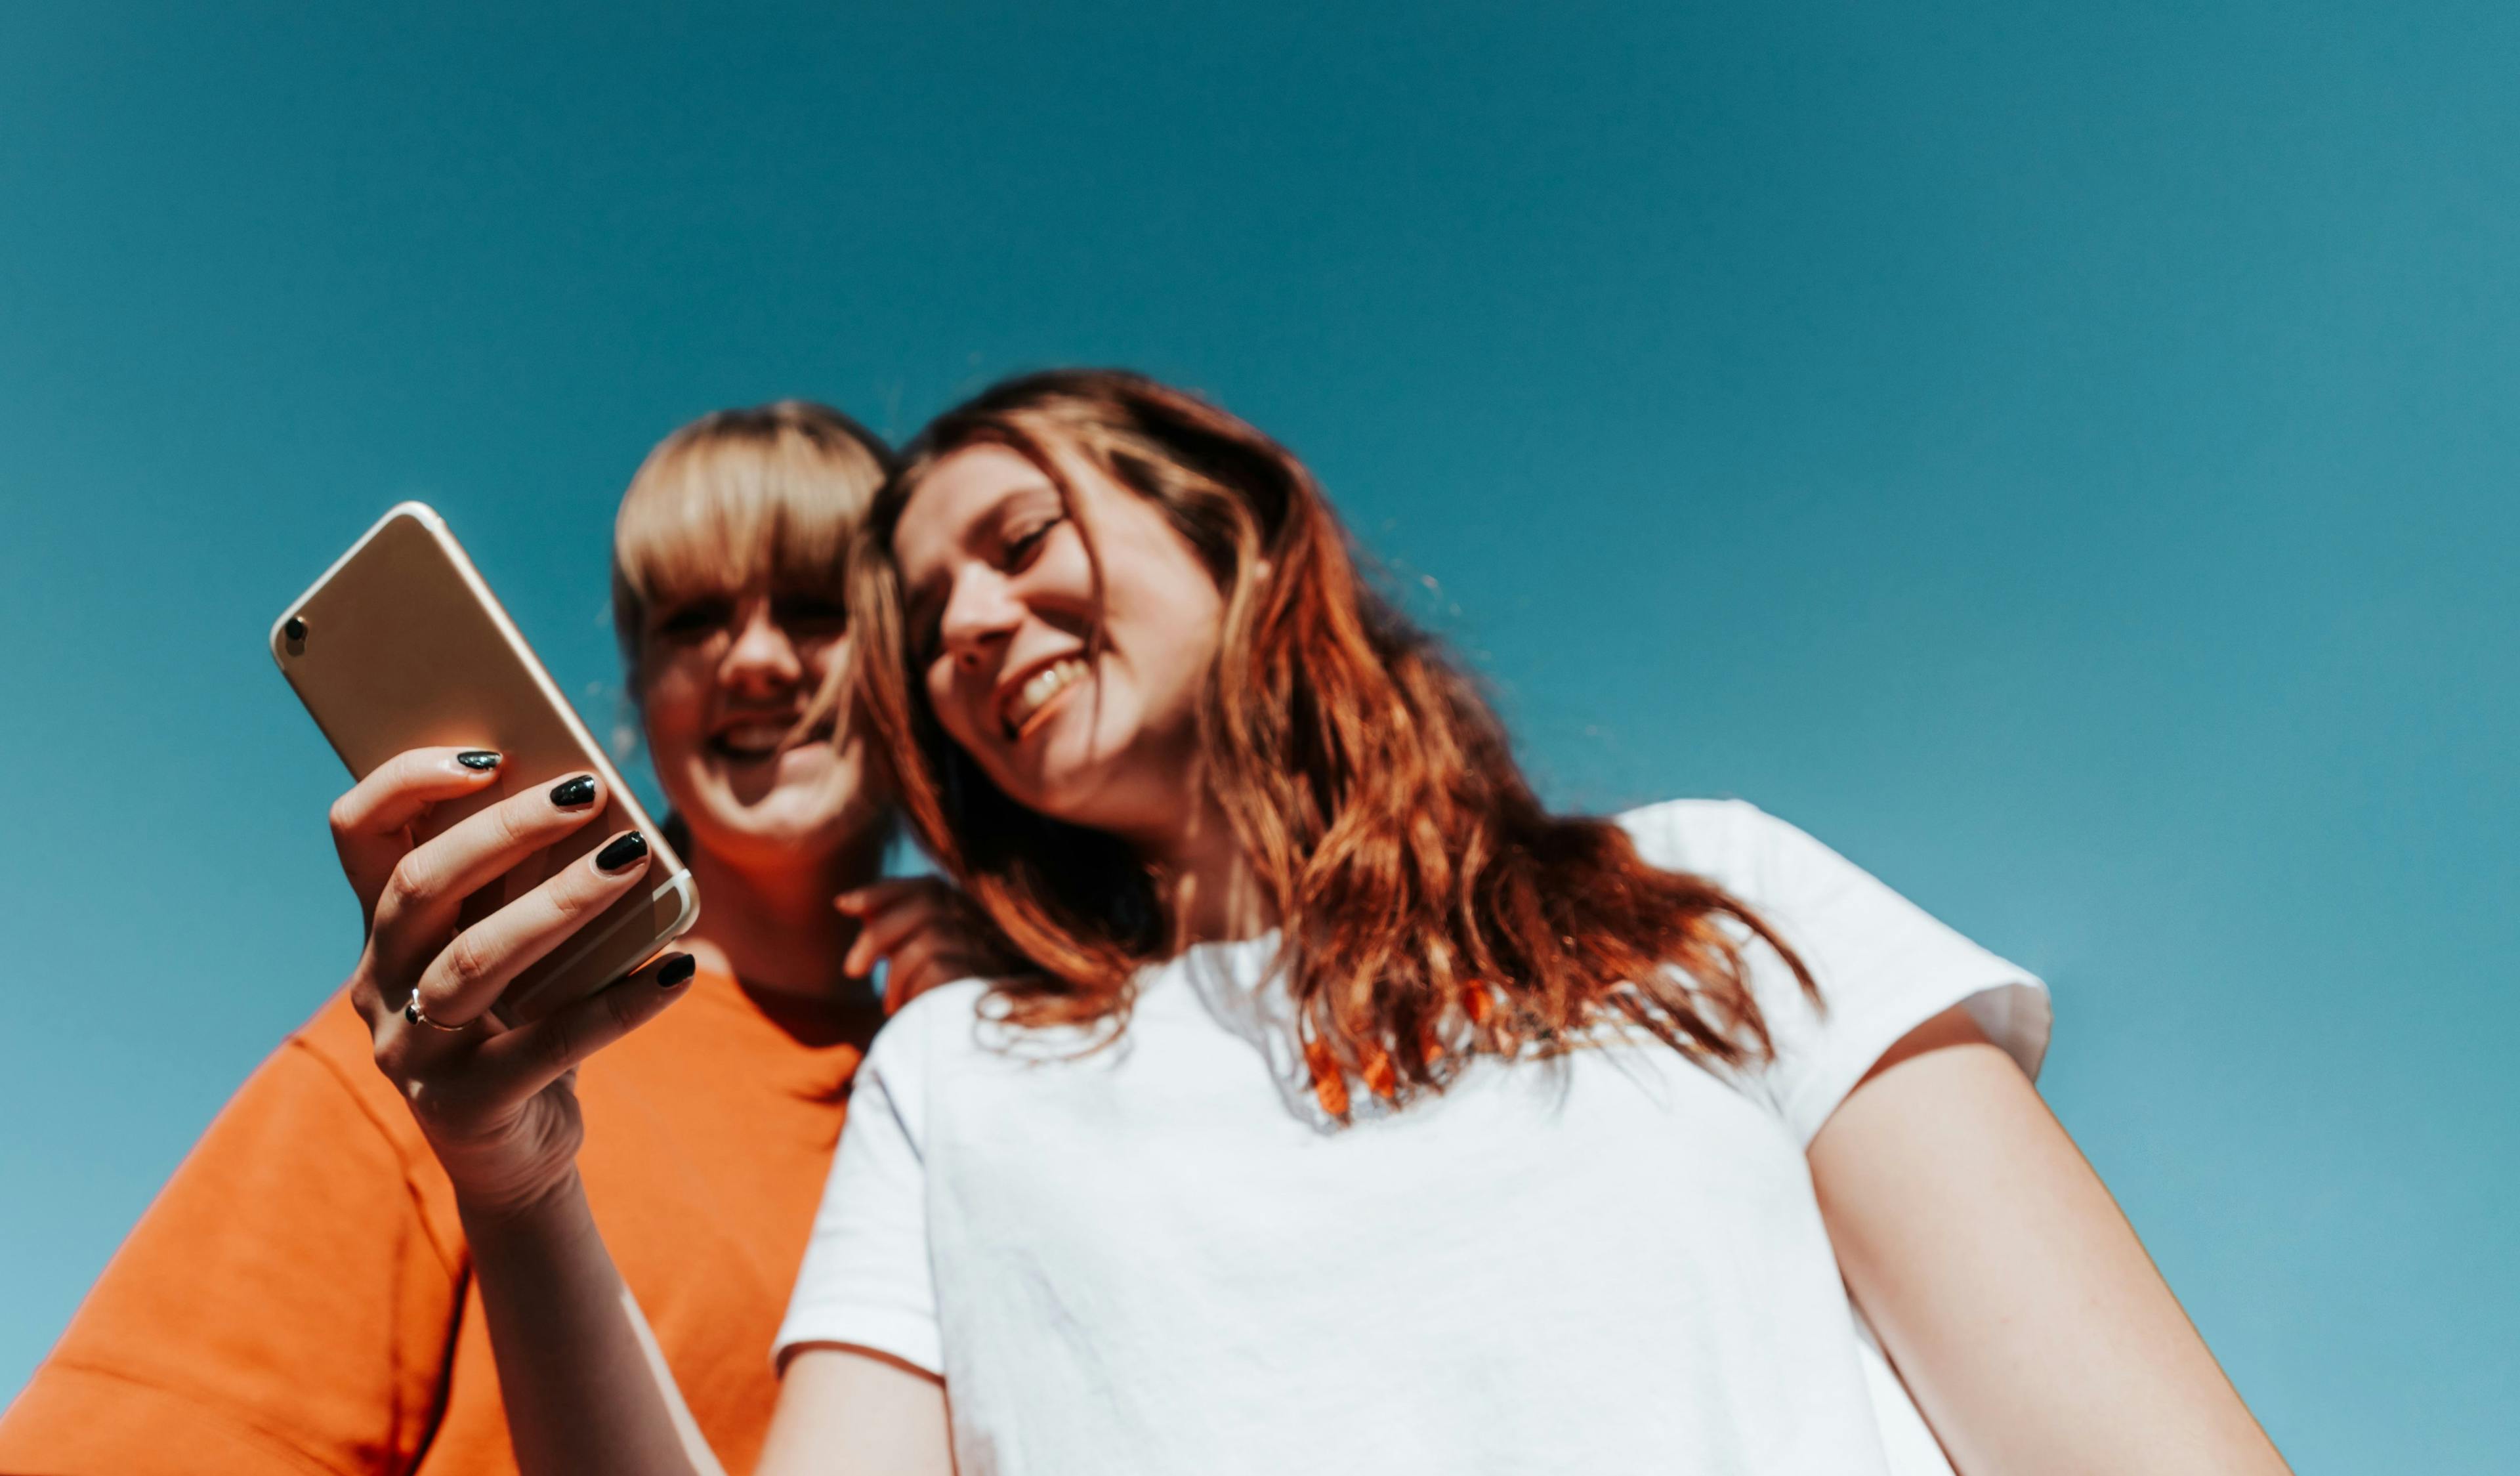 Zwei junge Frauen stehen nebeneinander und schauen auf ein Handy, das die eine in der Hand hält. Im Hintergrund blauer Himmel.